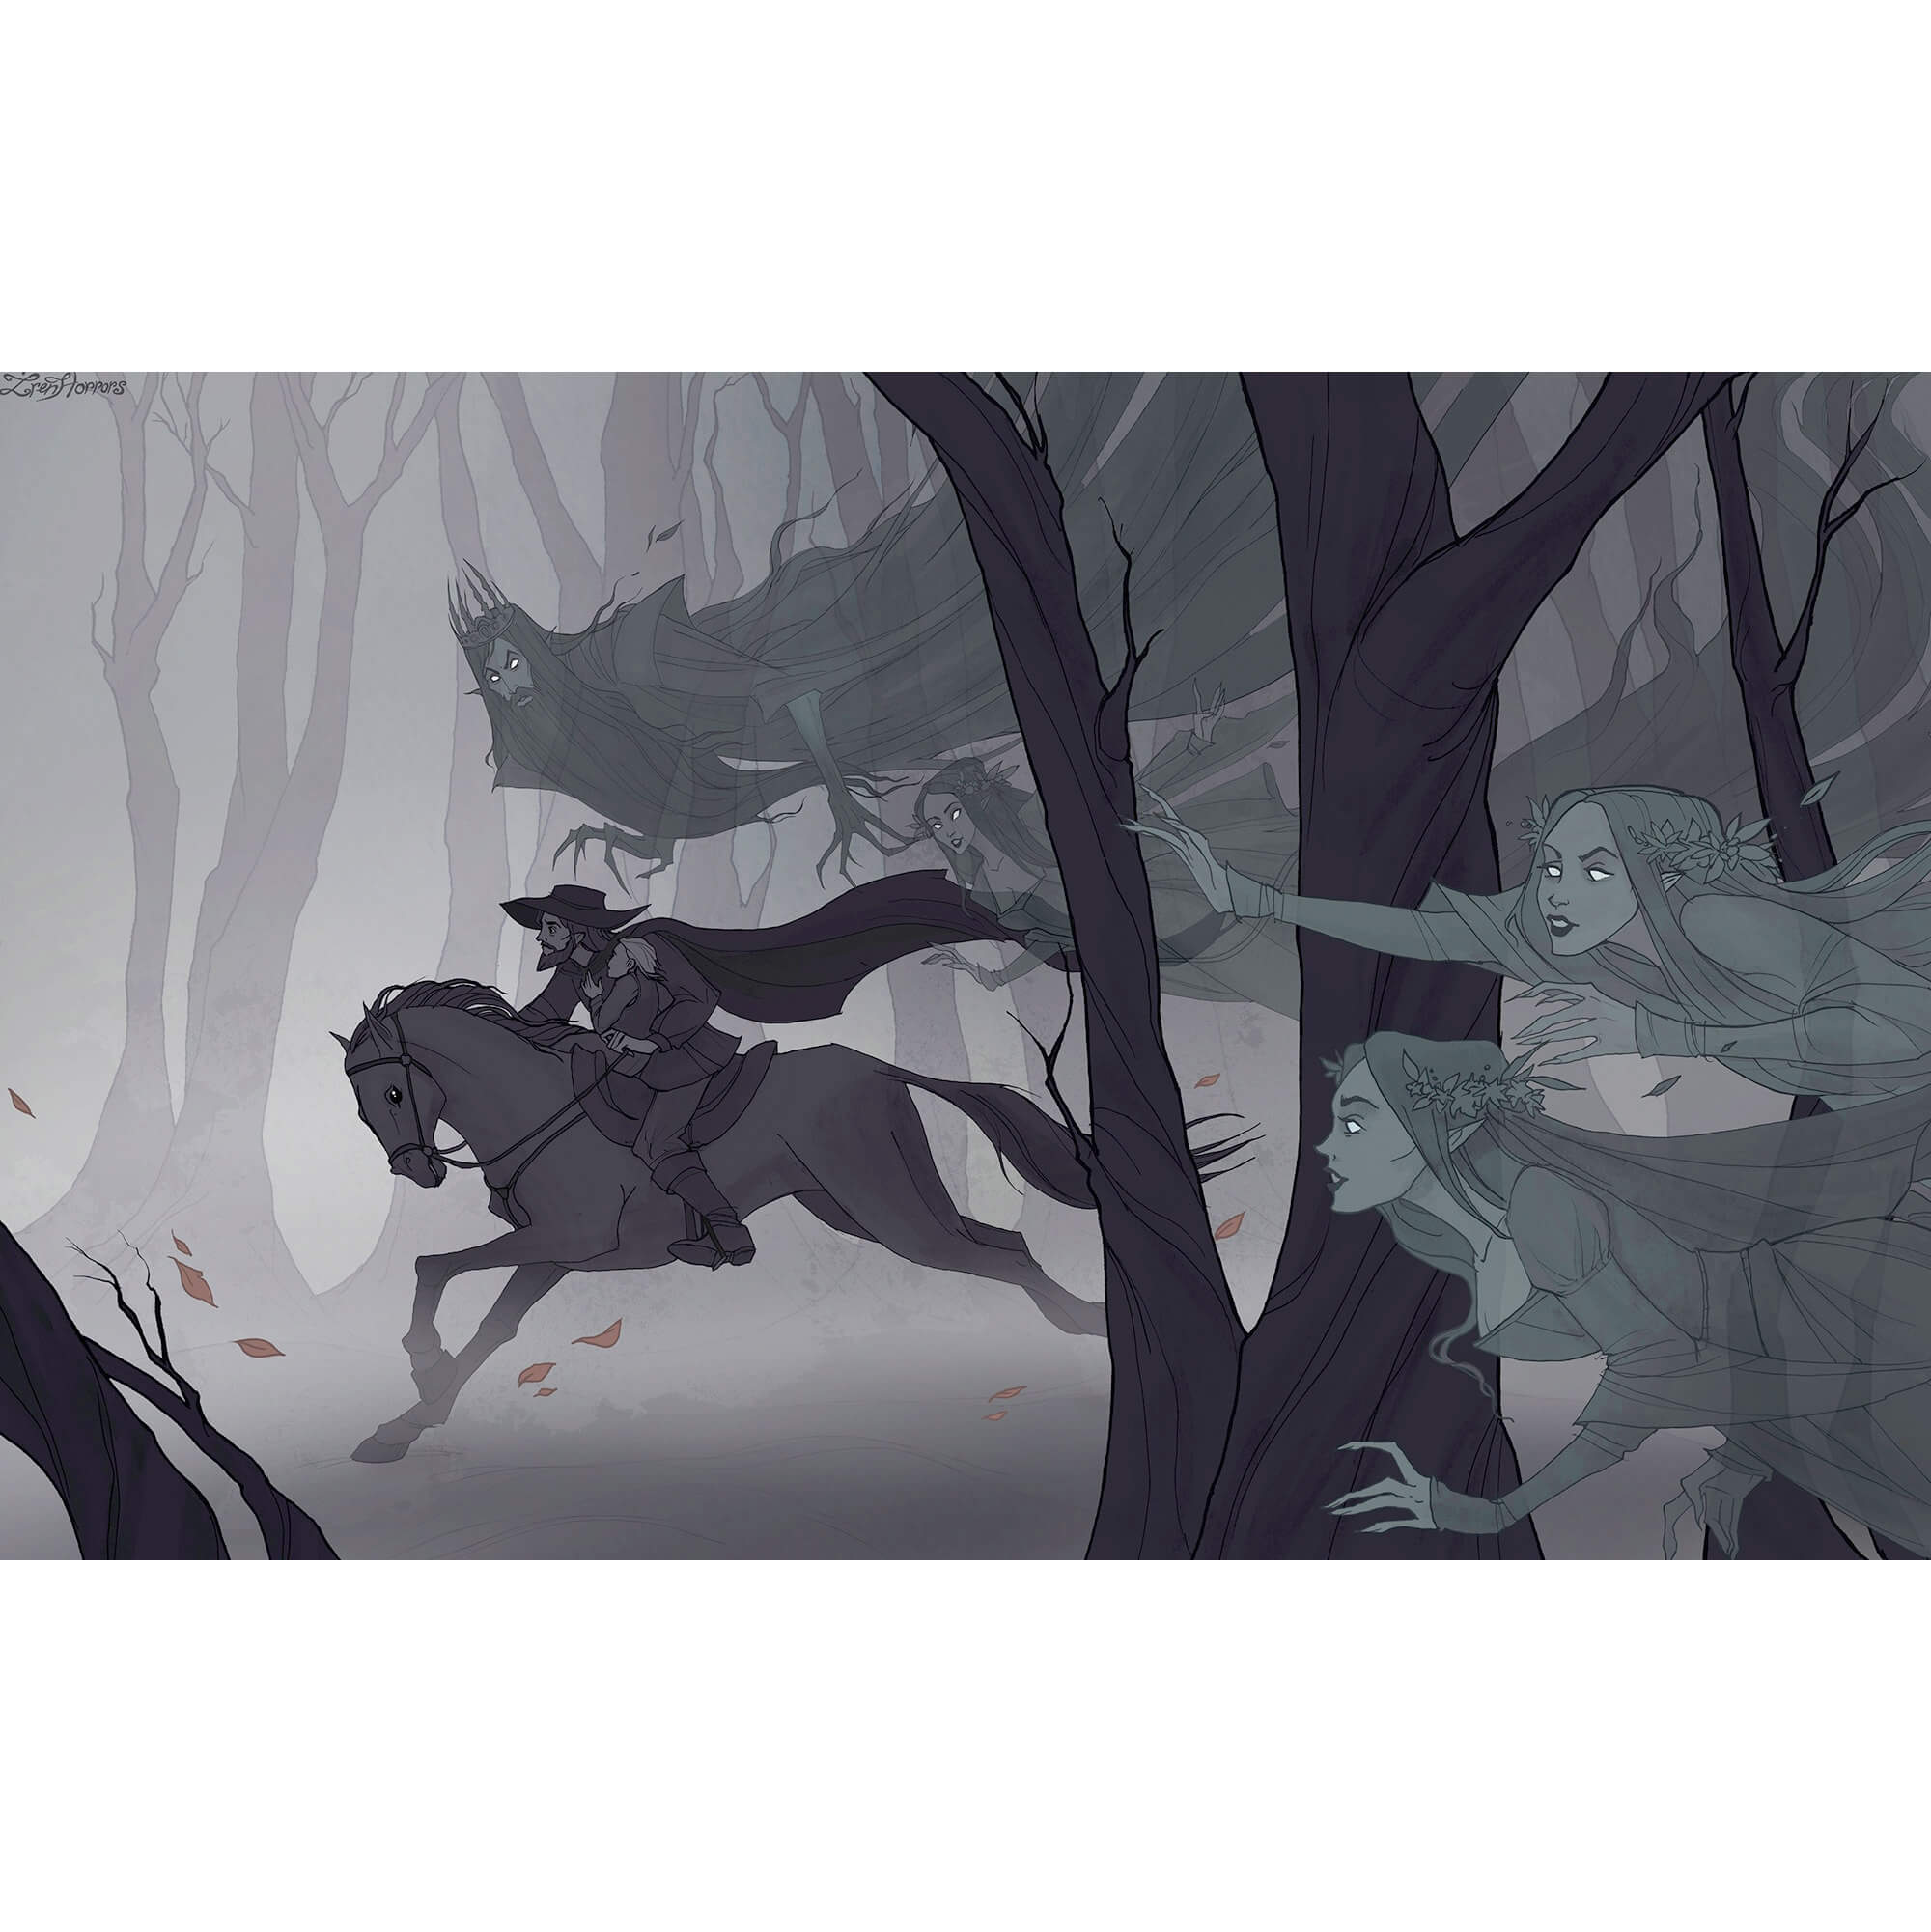 мужчина на коне скачет через лес, его преследует призраки